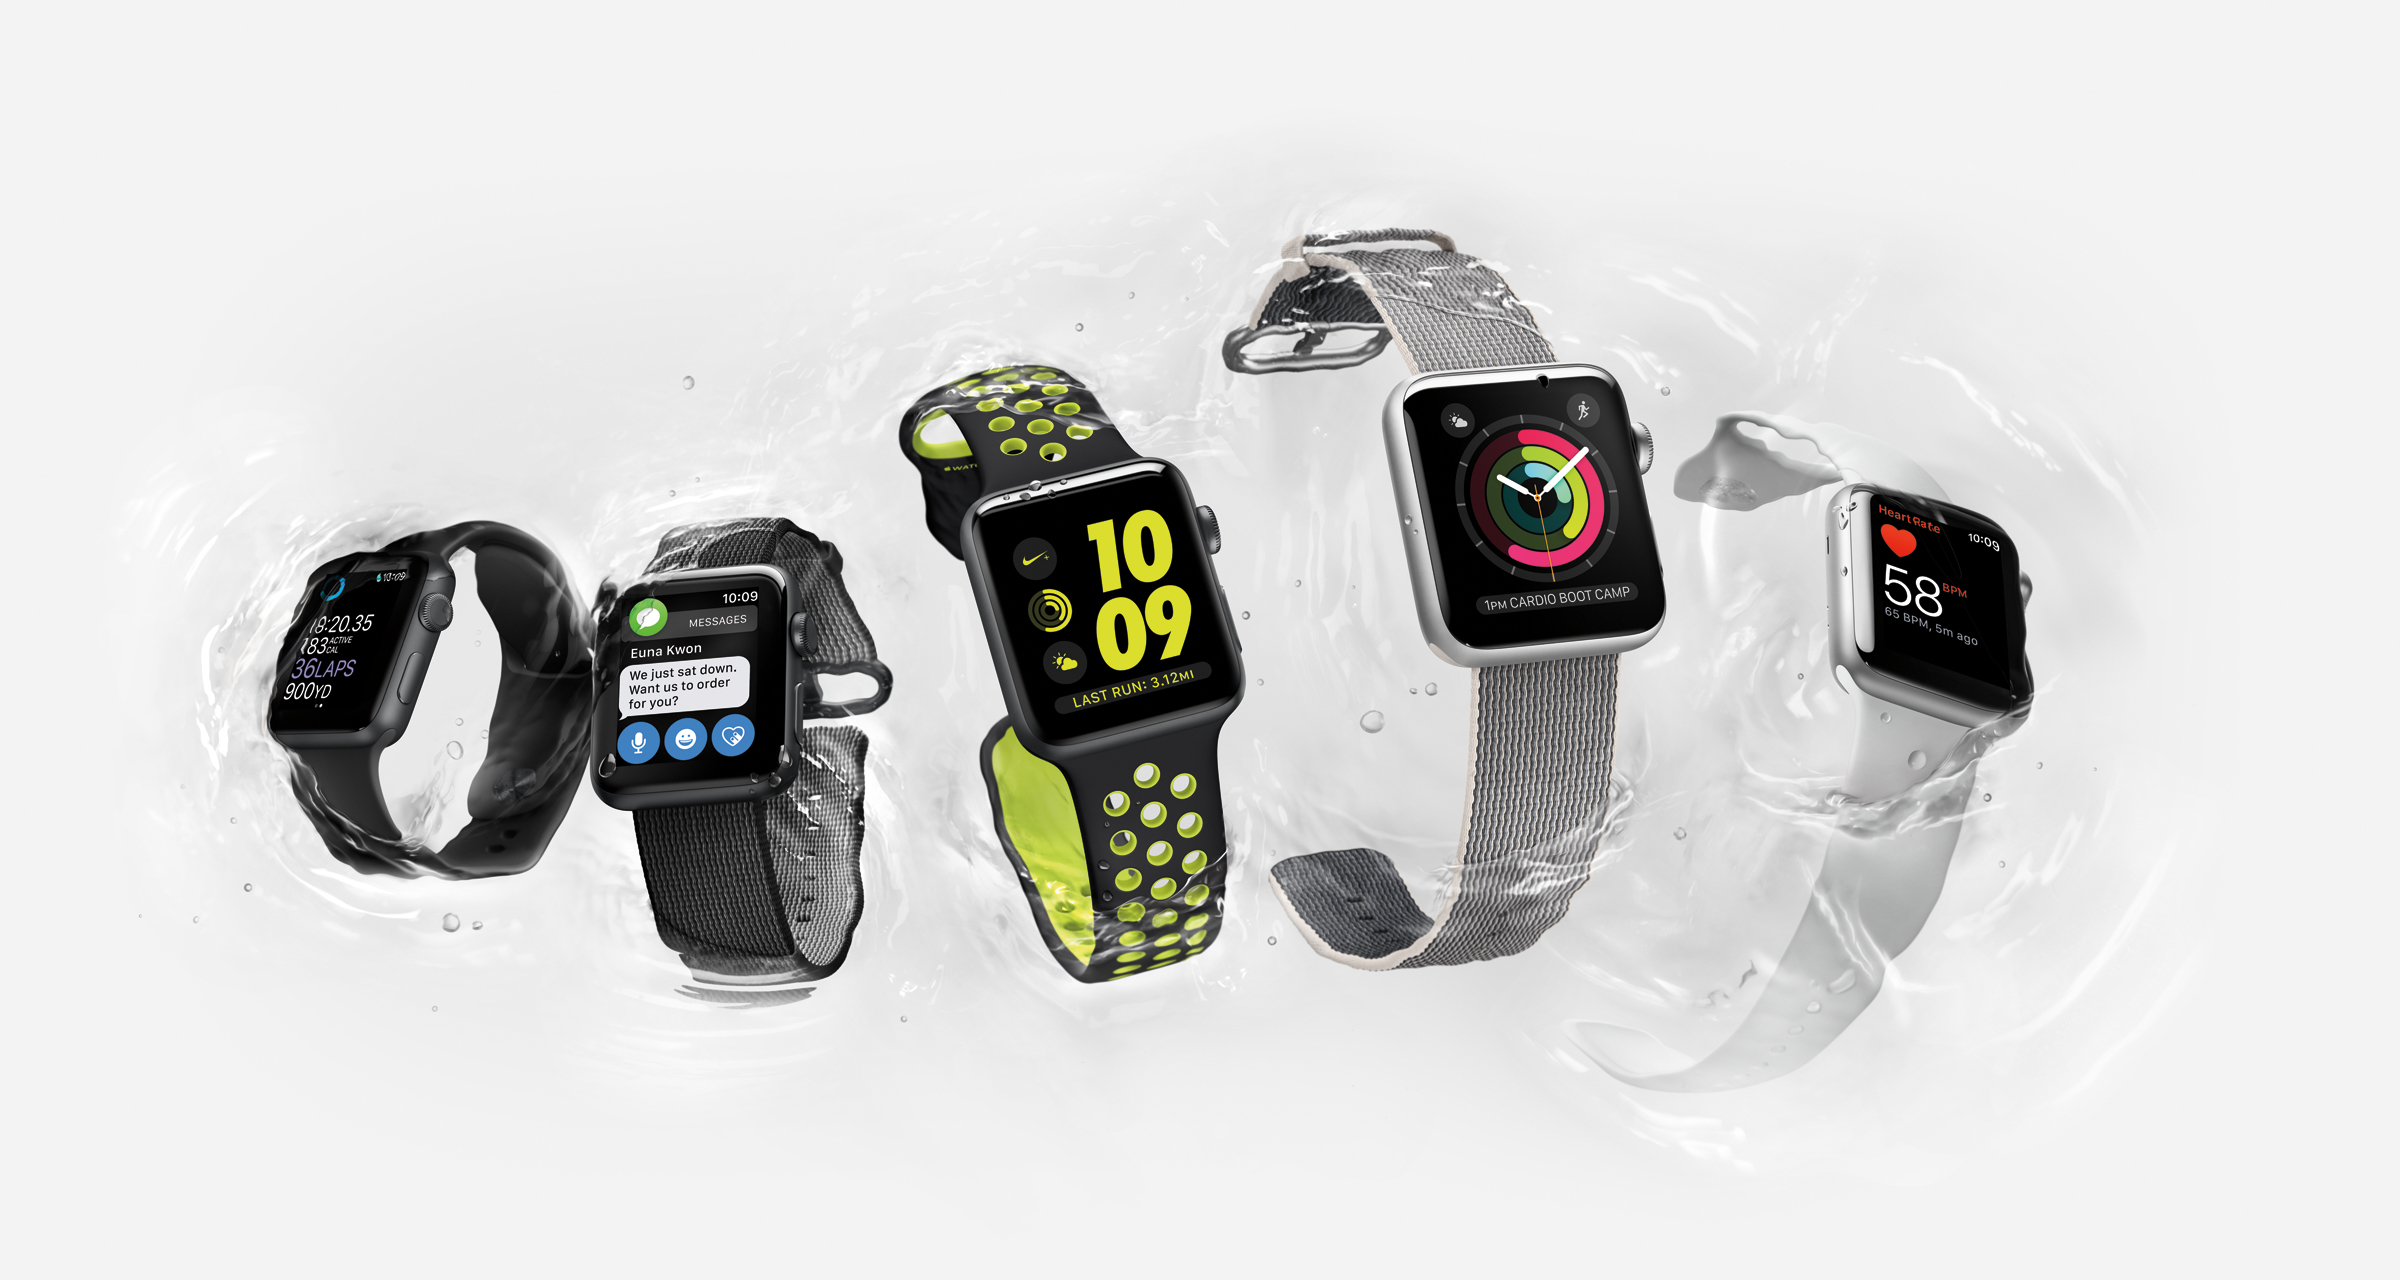 Variert: Apple Watch fås i flere versjoner med ulik spesifikasjon og utseende. Vi har testet den fluor-fargede i midten. Foto: Apple